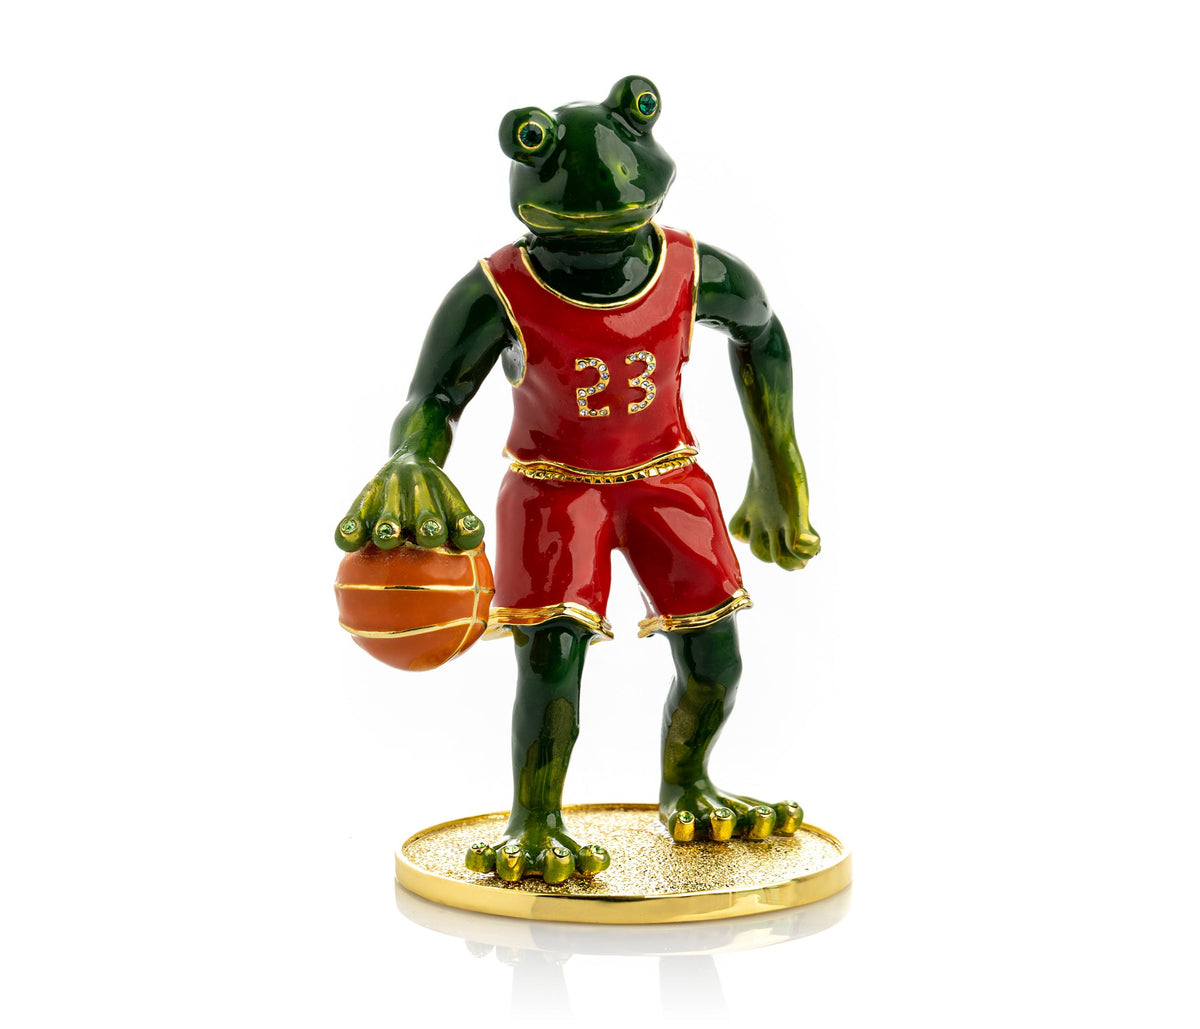 Frog Playing Basketball